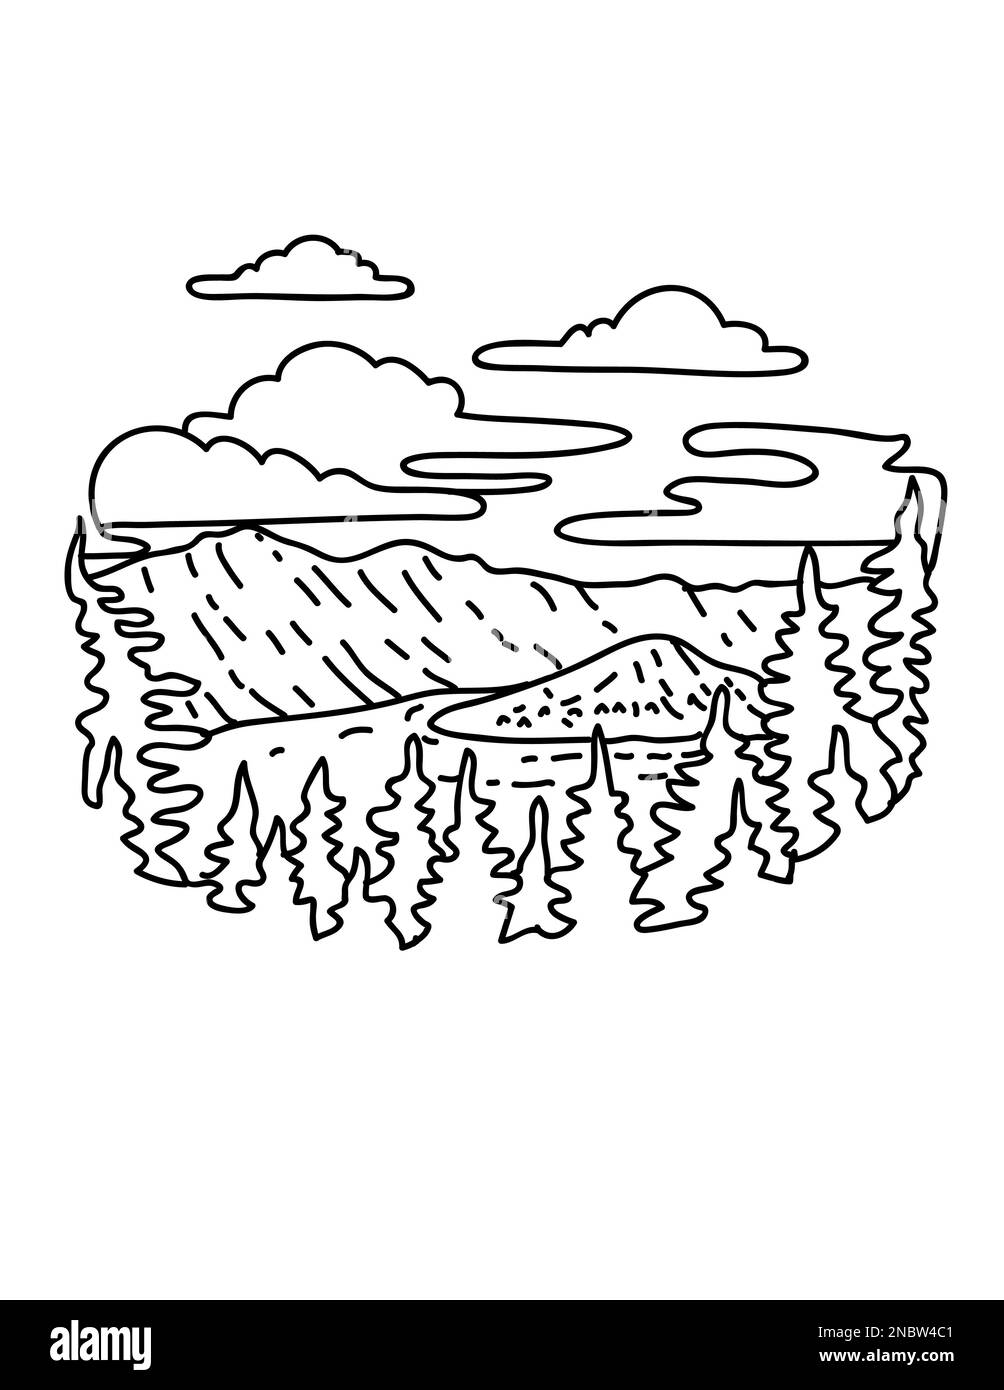 Illustrazione in monocromia del Parco Nazionale del Crater Lake nelle Cascade Mountains dell'Oregon meridionale in stile disegno a linee monoline. Foto Stock